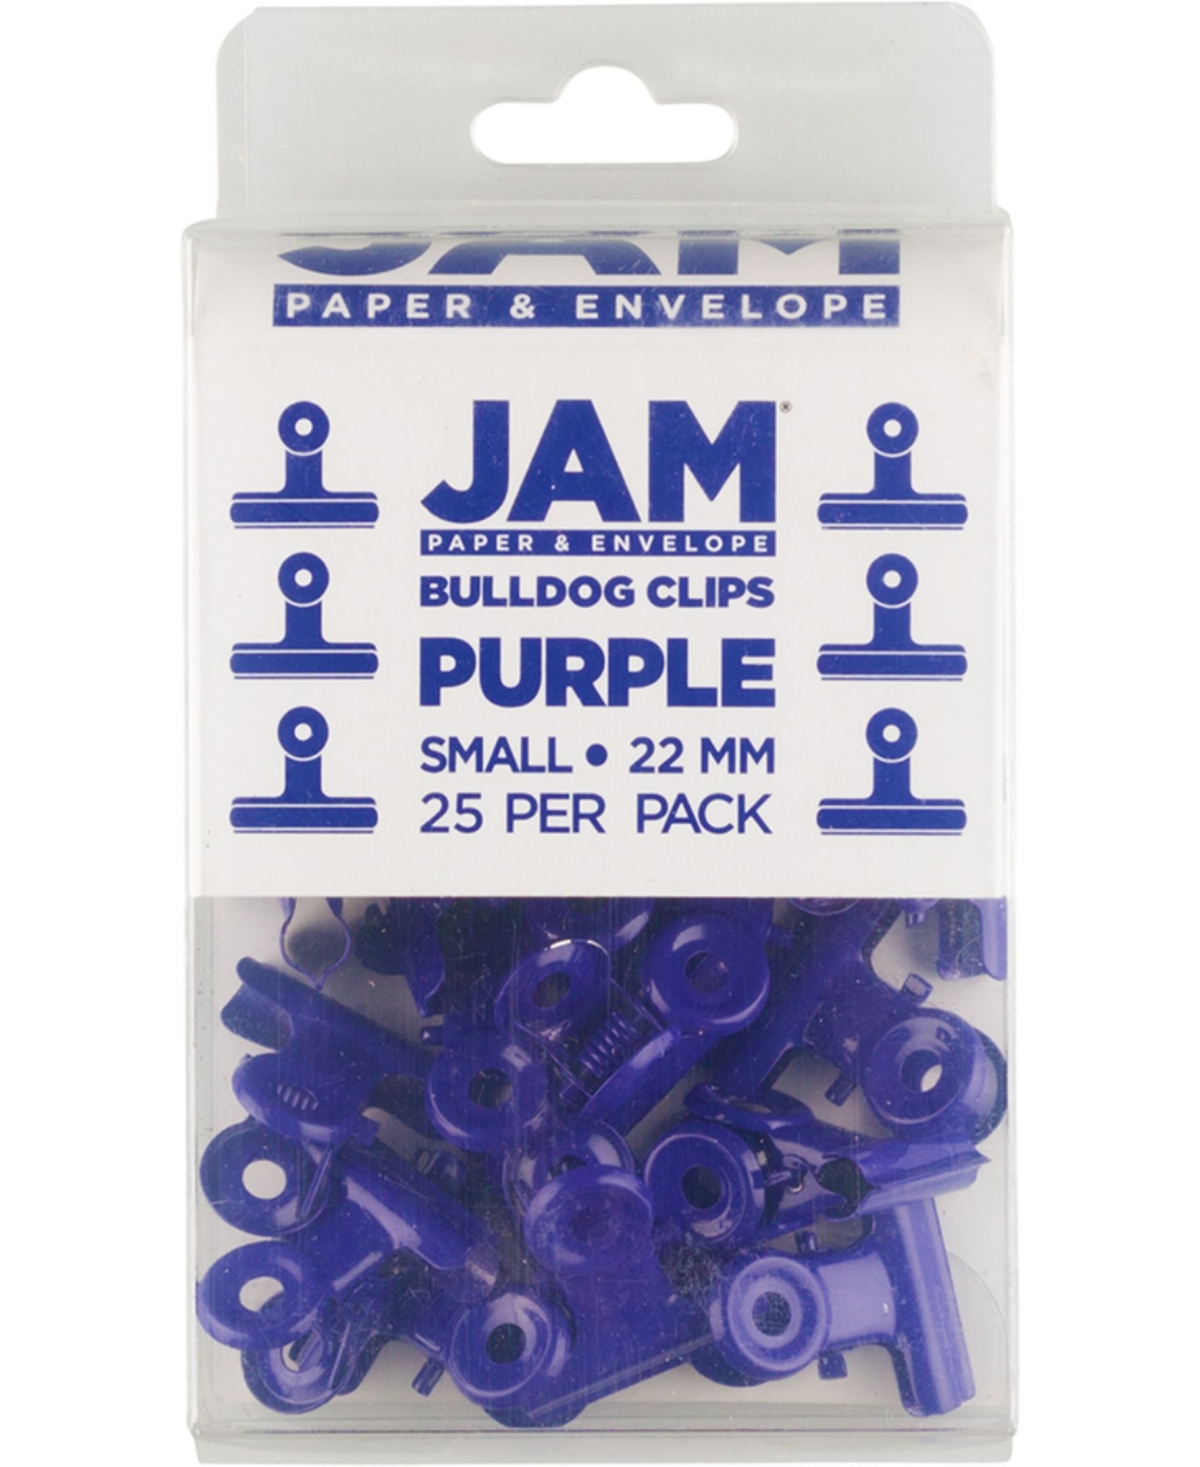 Jam Paper Metal Bulldog Clips In Purple